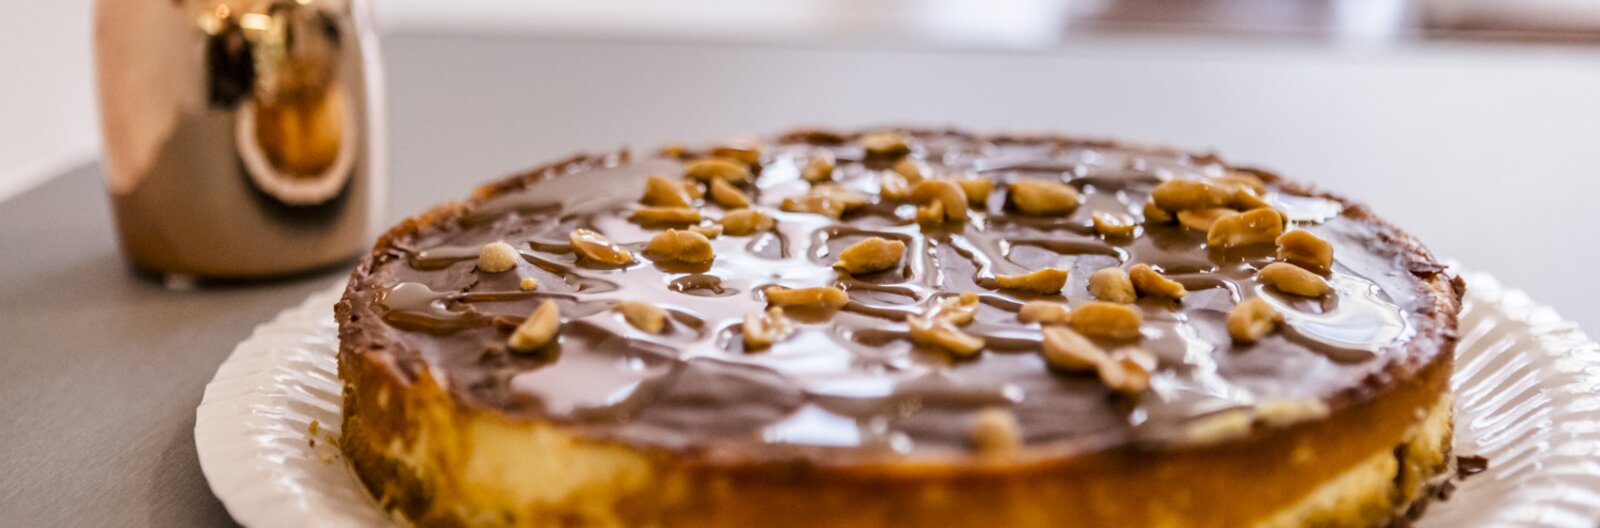 Büntetlen örömök – budapesti cukrászdák és pékségek, ahol remek mentes sütiket kaphatsz